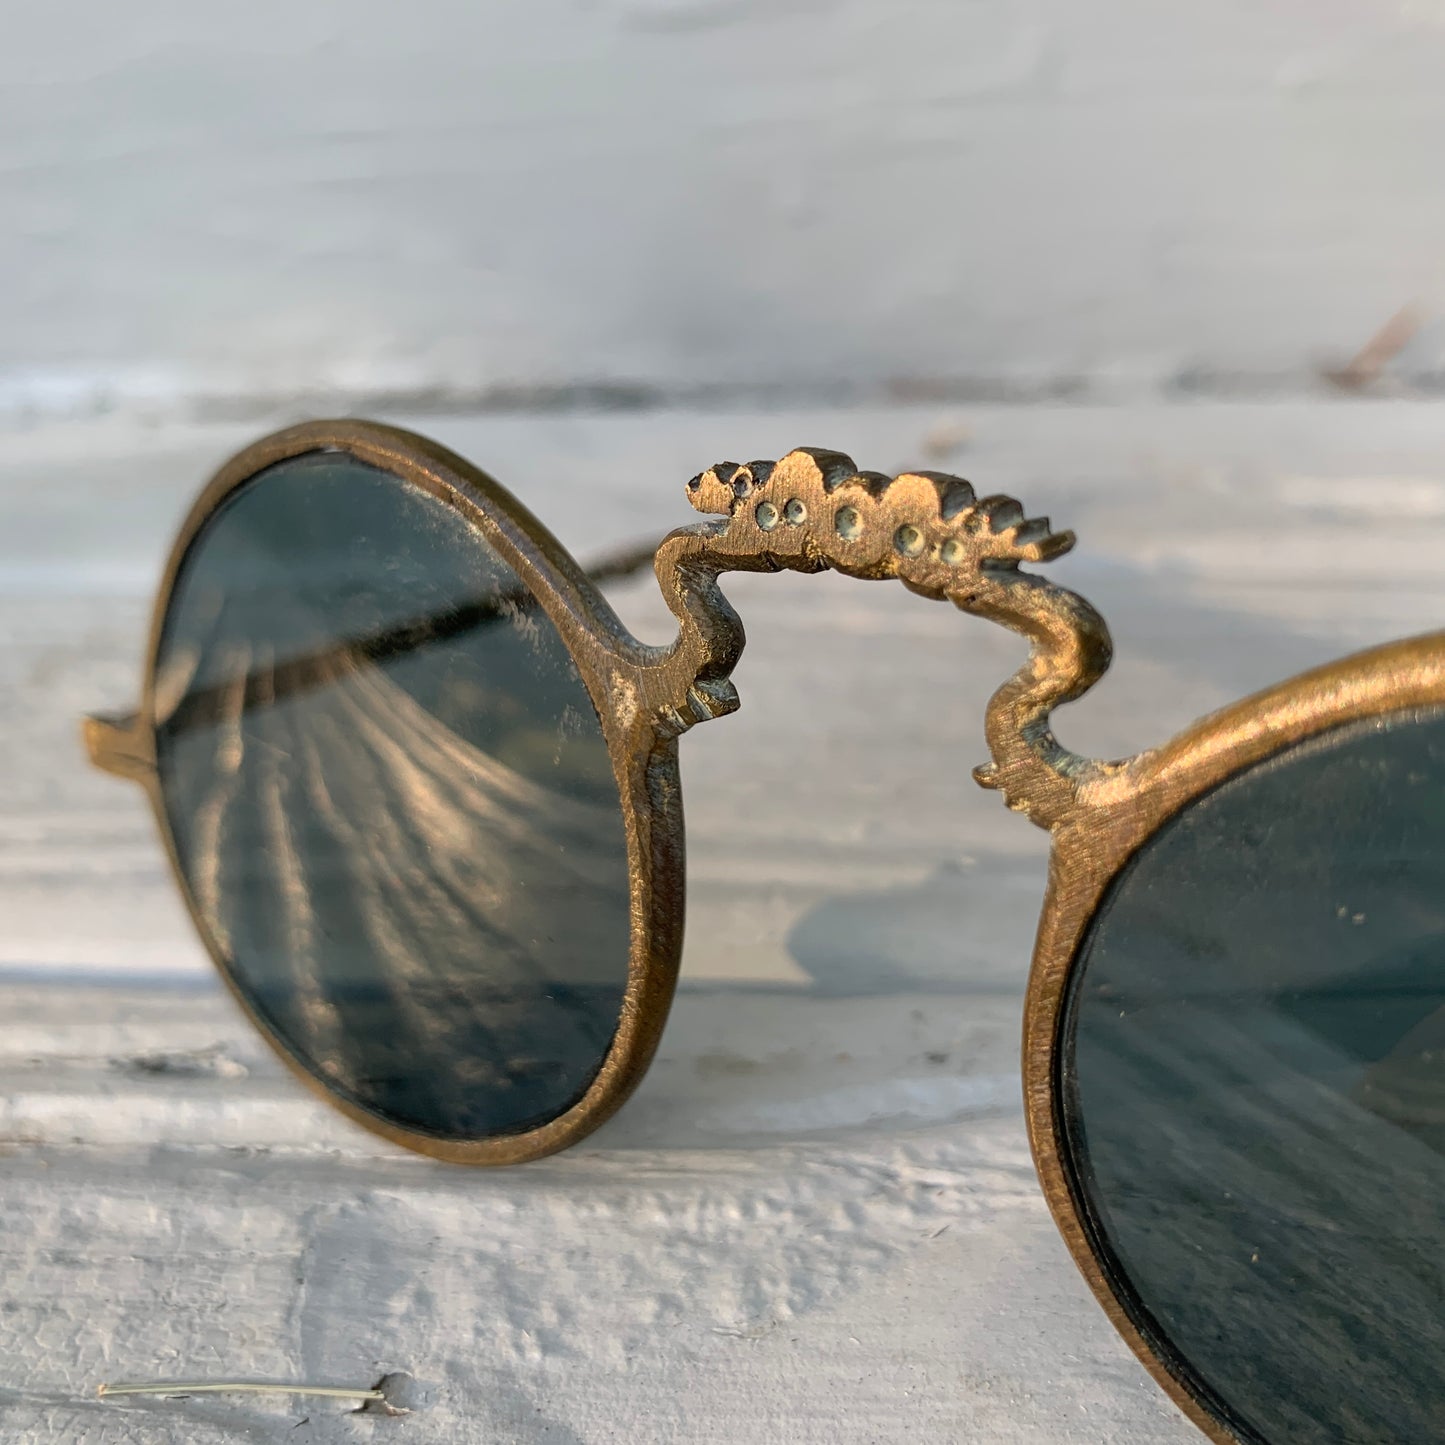 Antique Chinese Sunglasses 19th c.